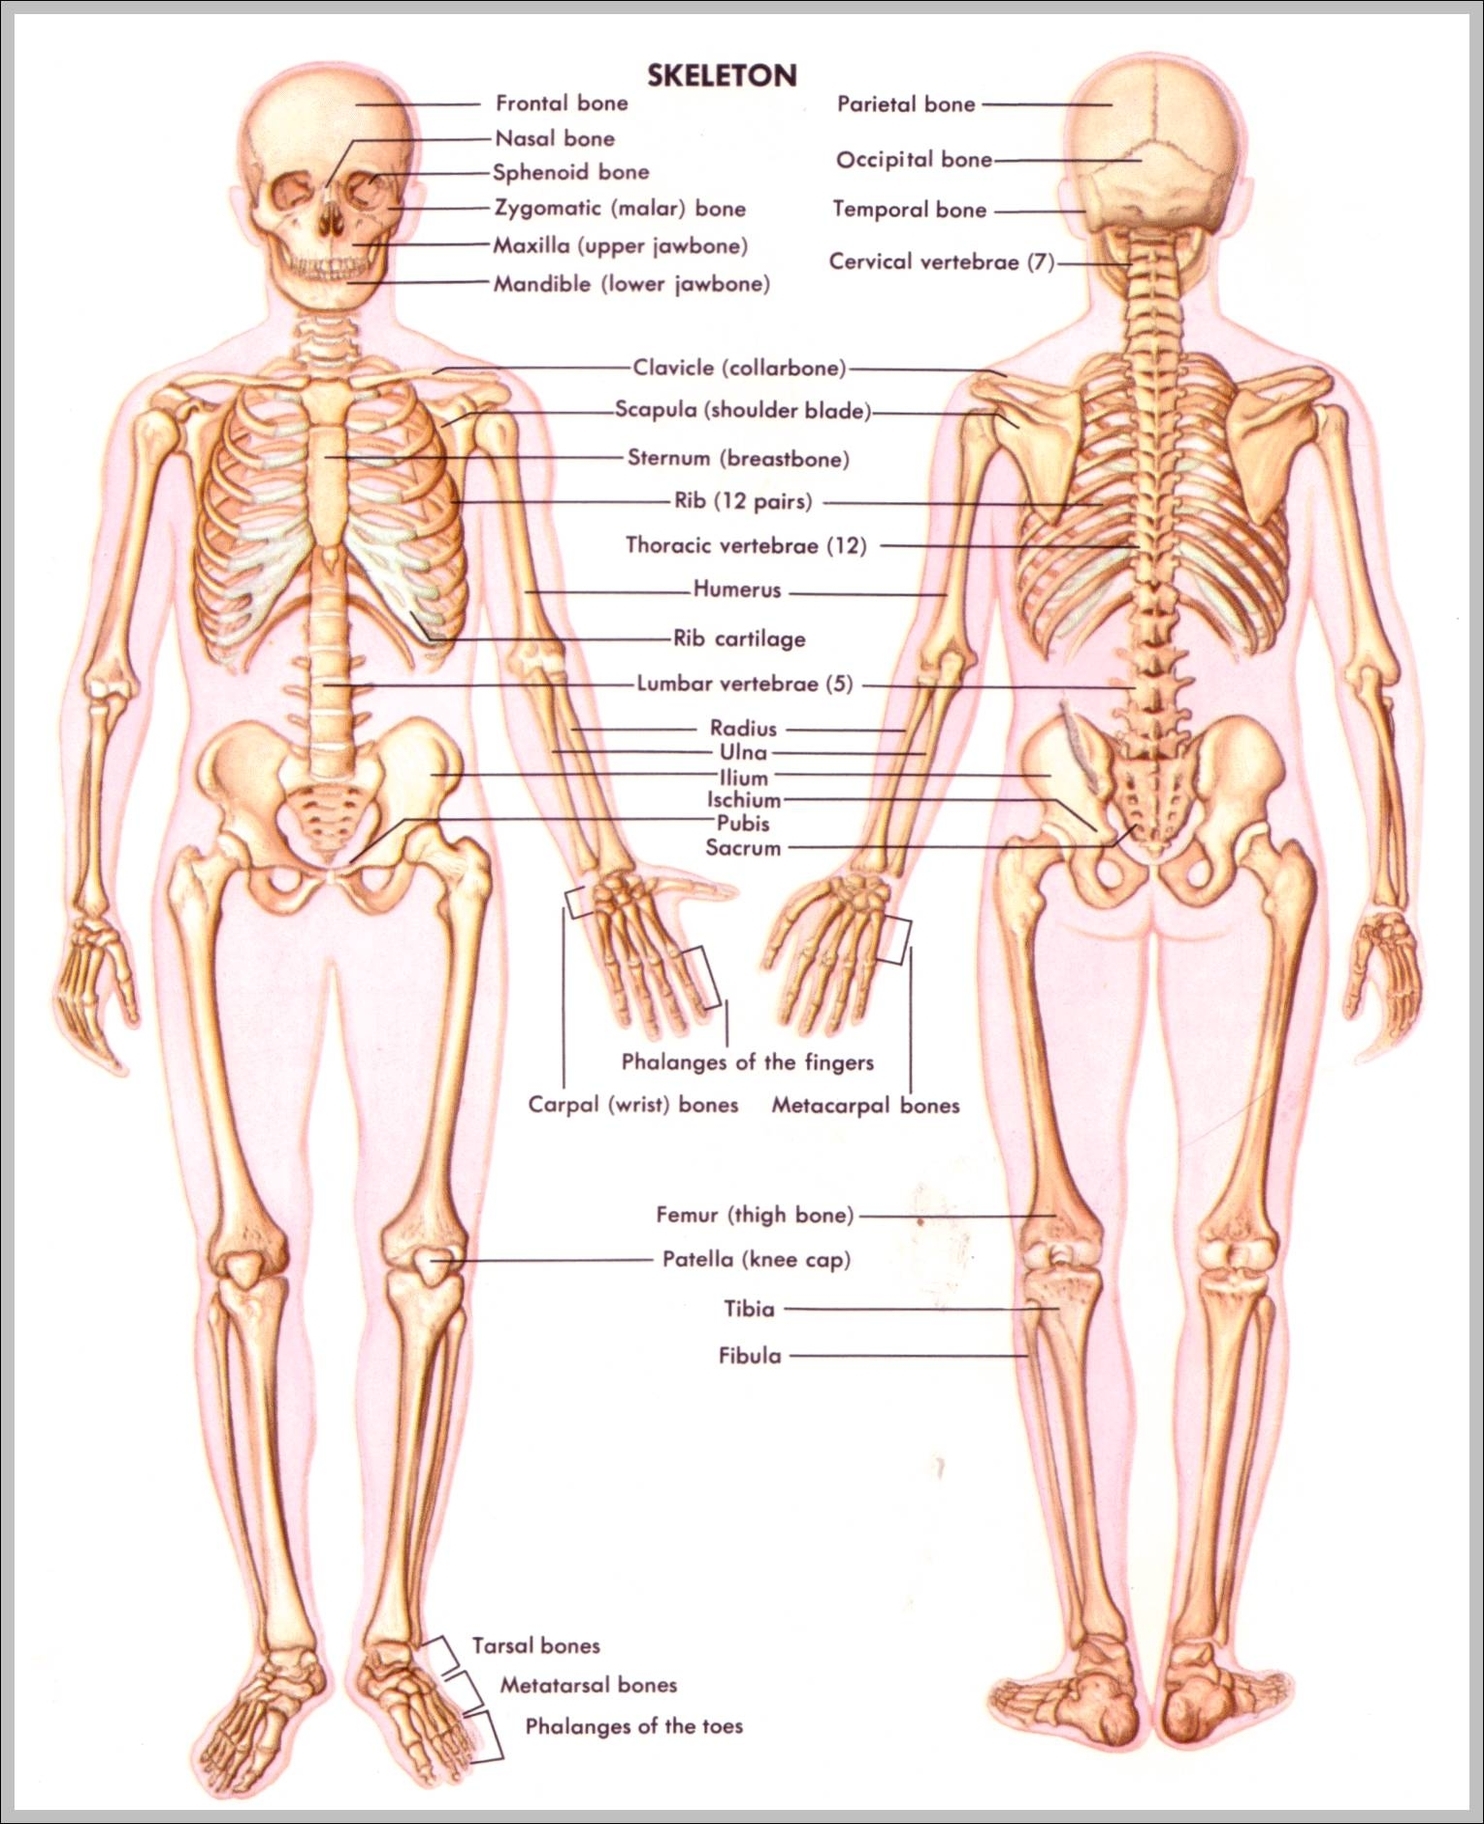 image of skeletal system